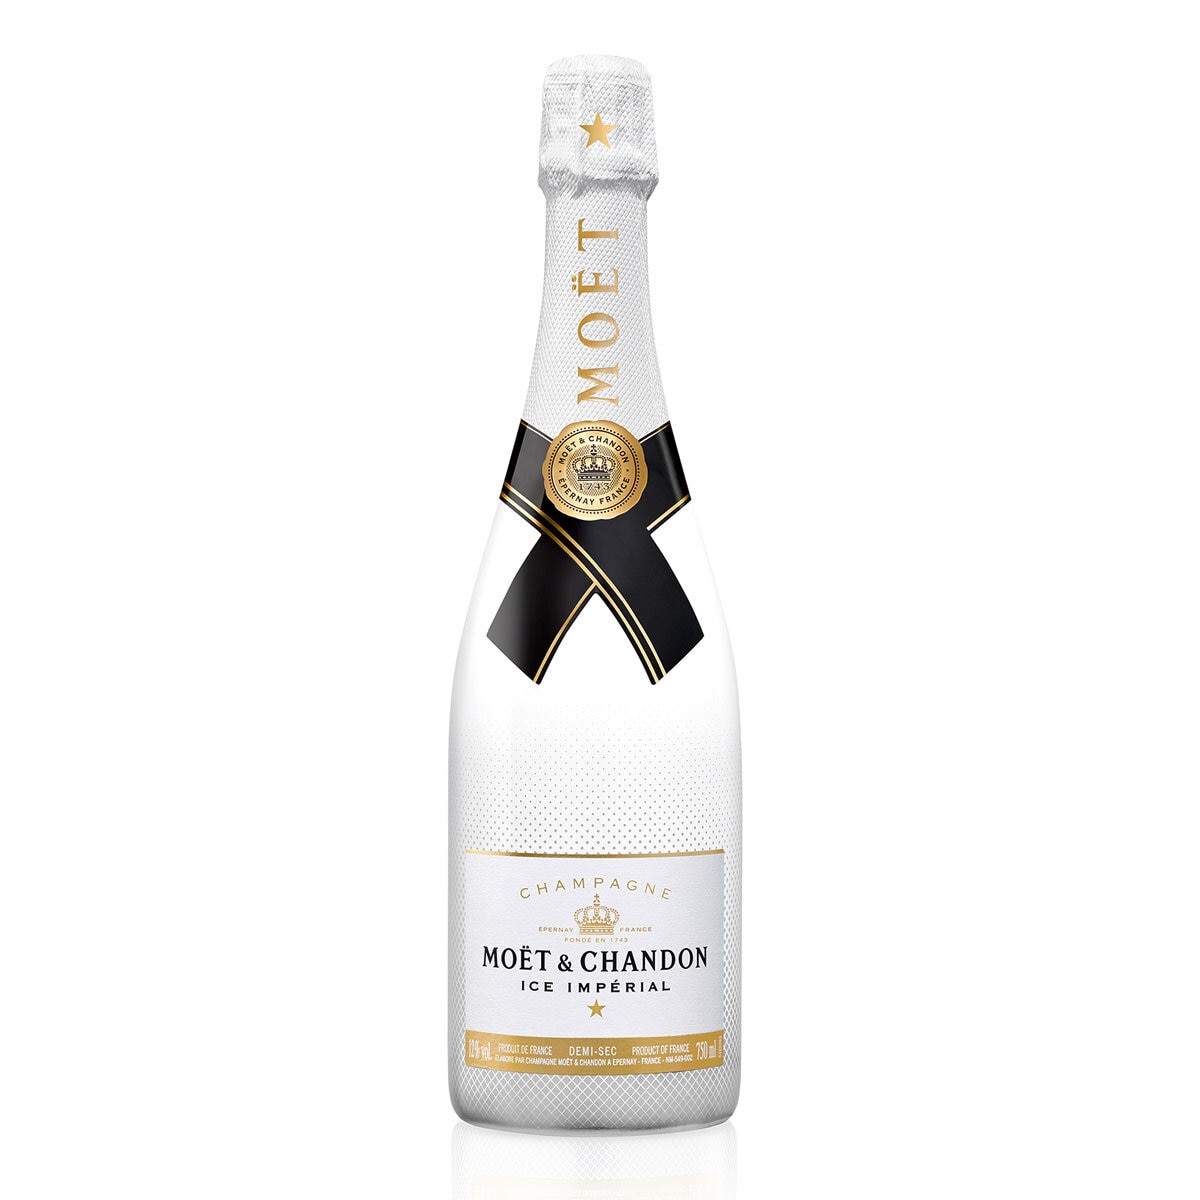 Moët & Chandon Ice Impérial Champagne, 75cl